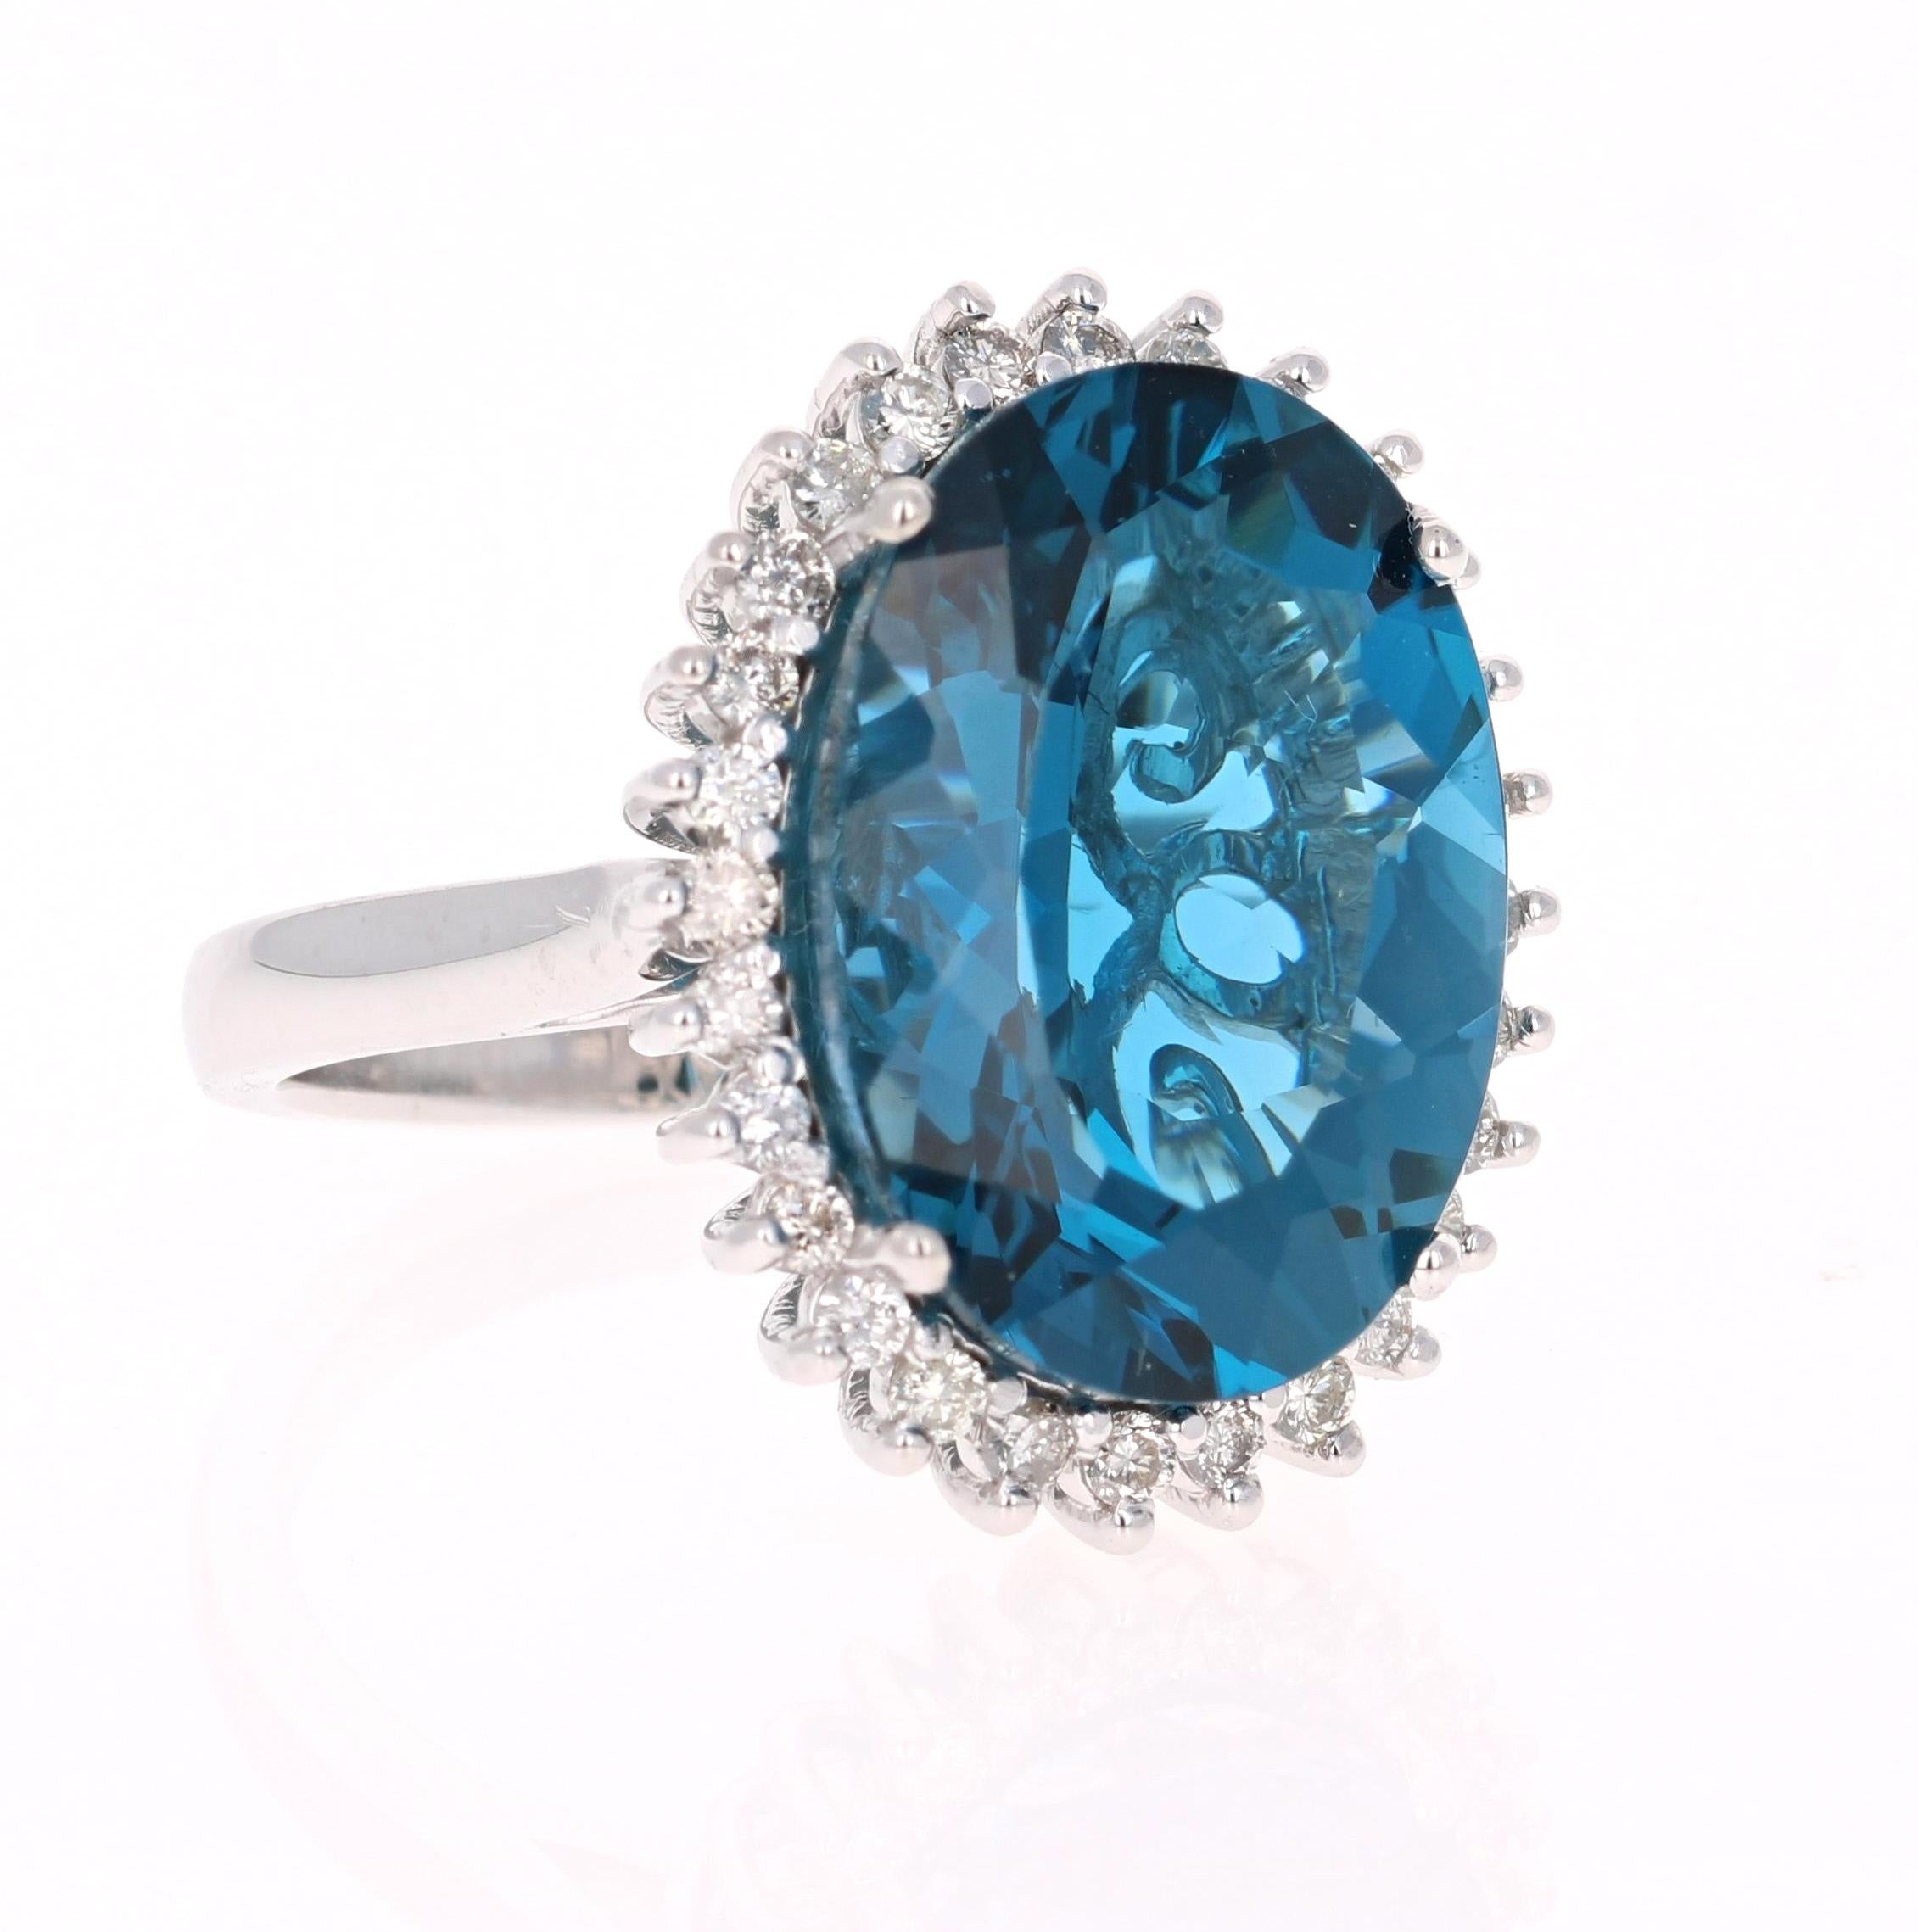 Dieser wunderschöne Ring mit Blautopas und Diamant im Ovalschliff hat einen atemberaubend großen Blautopas mit einem Gewicht von 13,62 Karat. Er ist umgeben von 28 Diamanten im Rundschliff mit einem Gewicht von 0,57 Karat. Das Gesamtkaratgewicht des